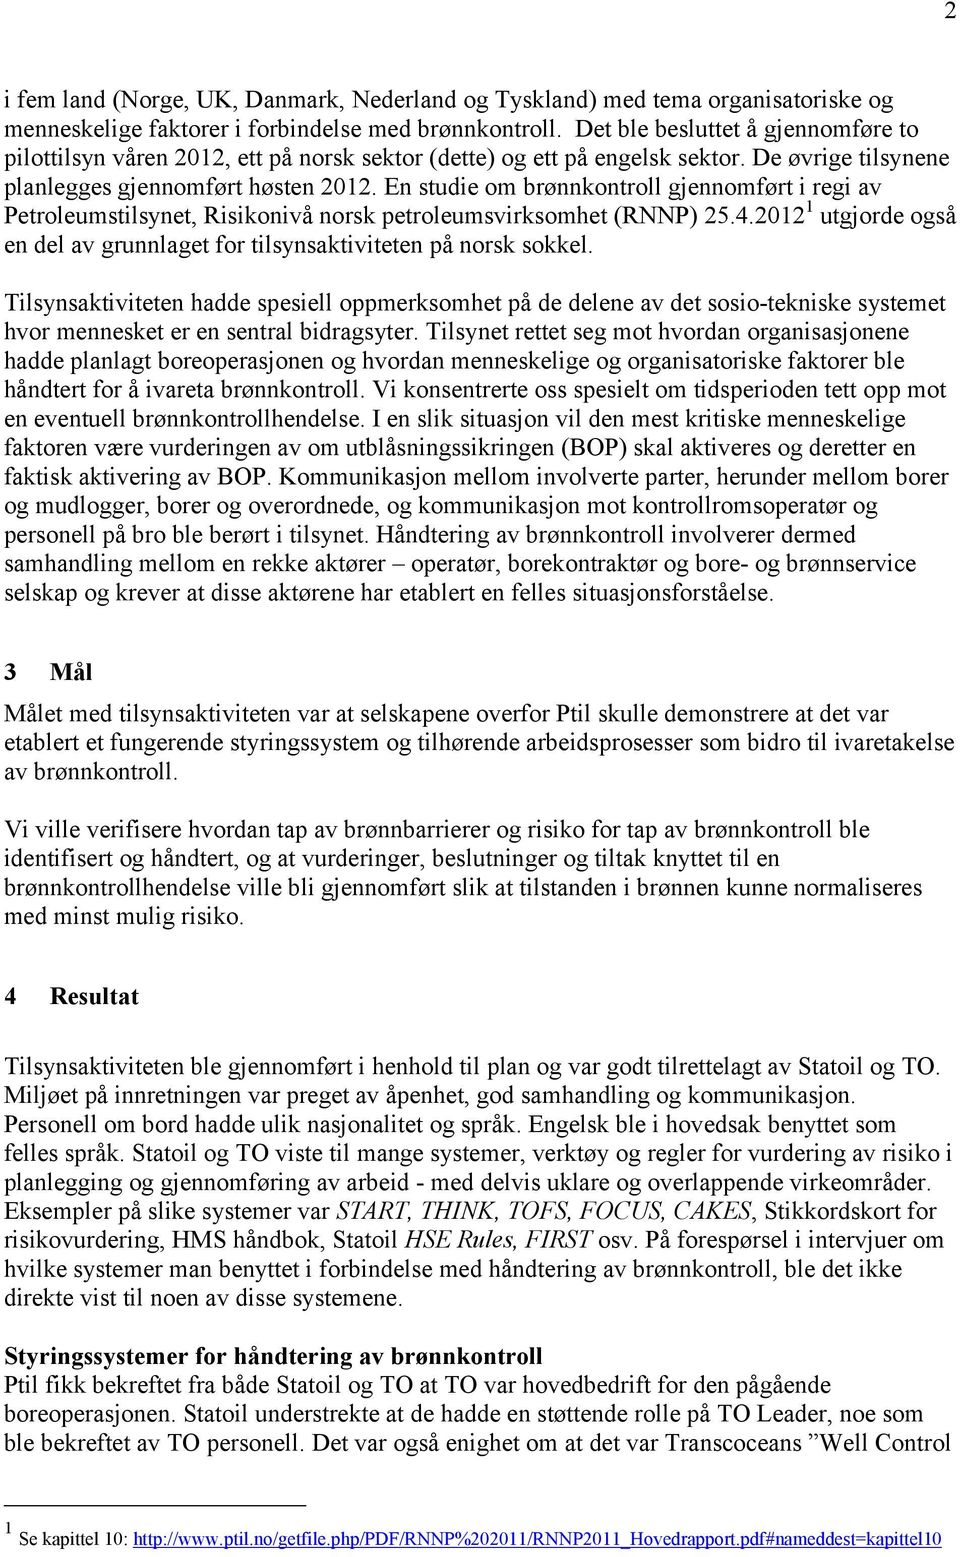 En studie om brønnkontroll gjennomført i regi av Petroleumstilsynet, Risikonivå norsk petroleumsvirksomhet (RNNP) 25.4.2012 1 utgjorde også en del av grunnlaget for tilsynsaktiviteten på norsk sokkel.